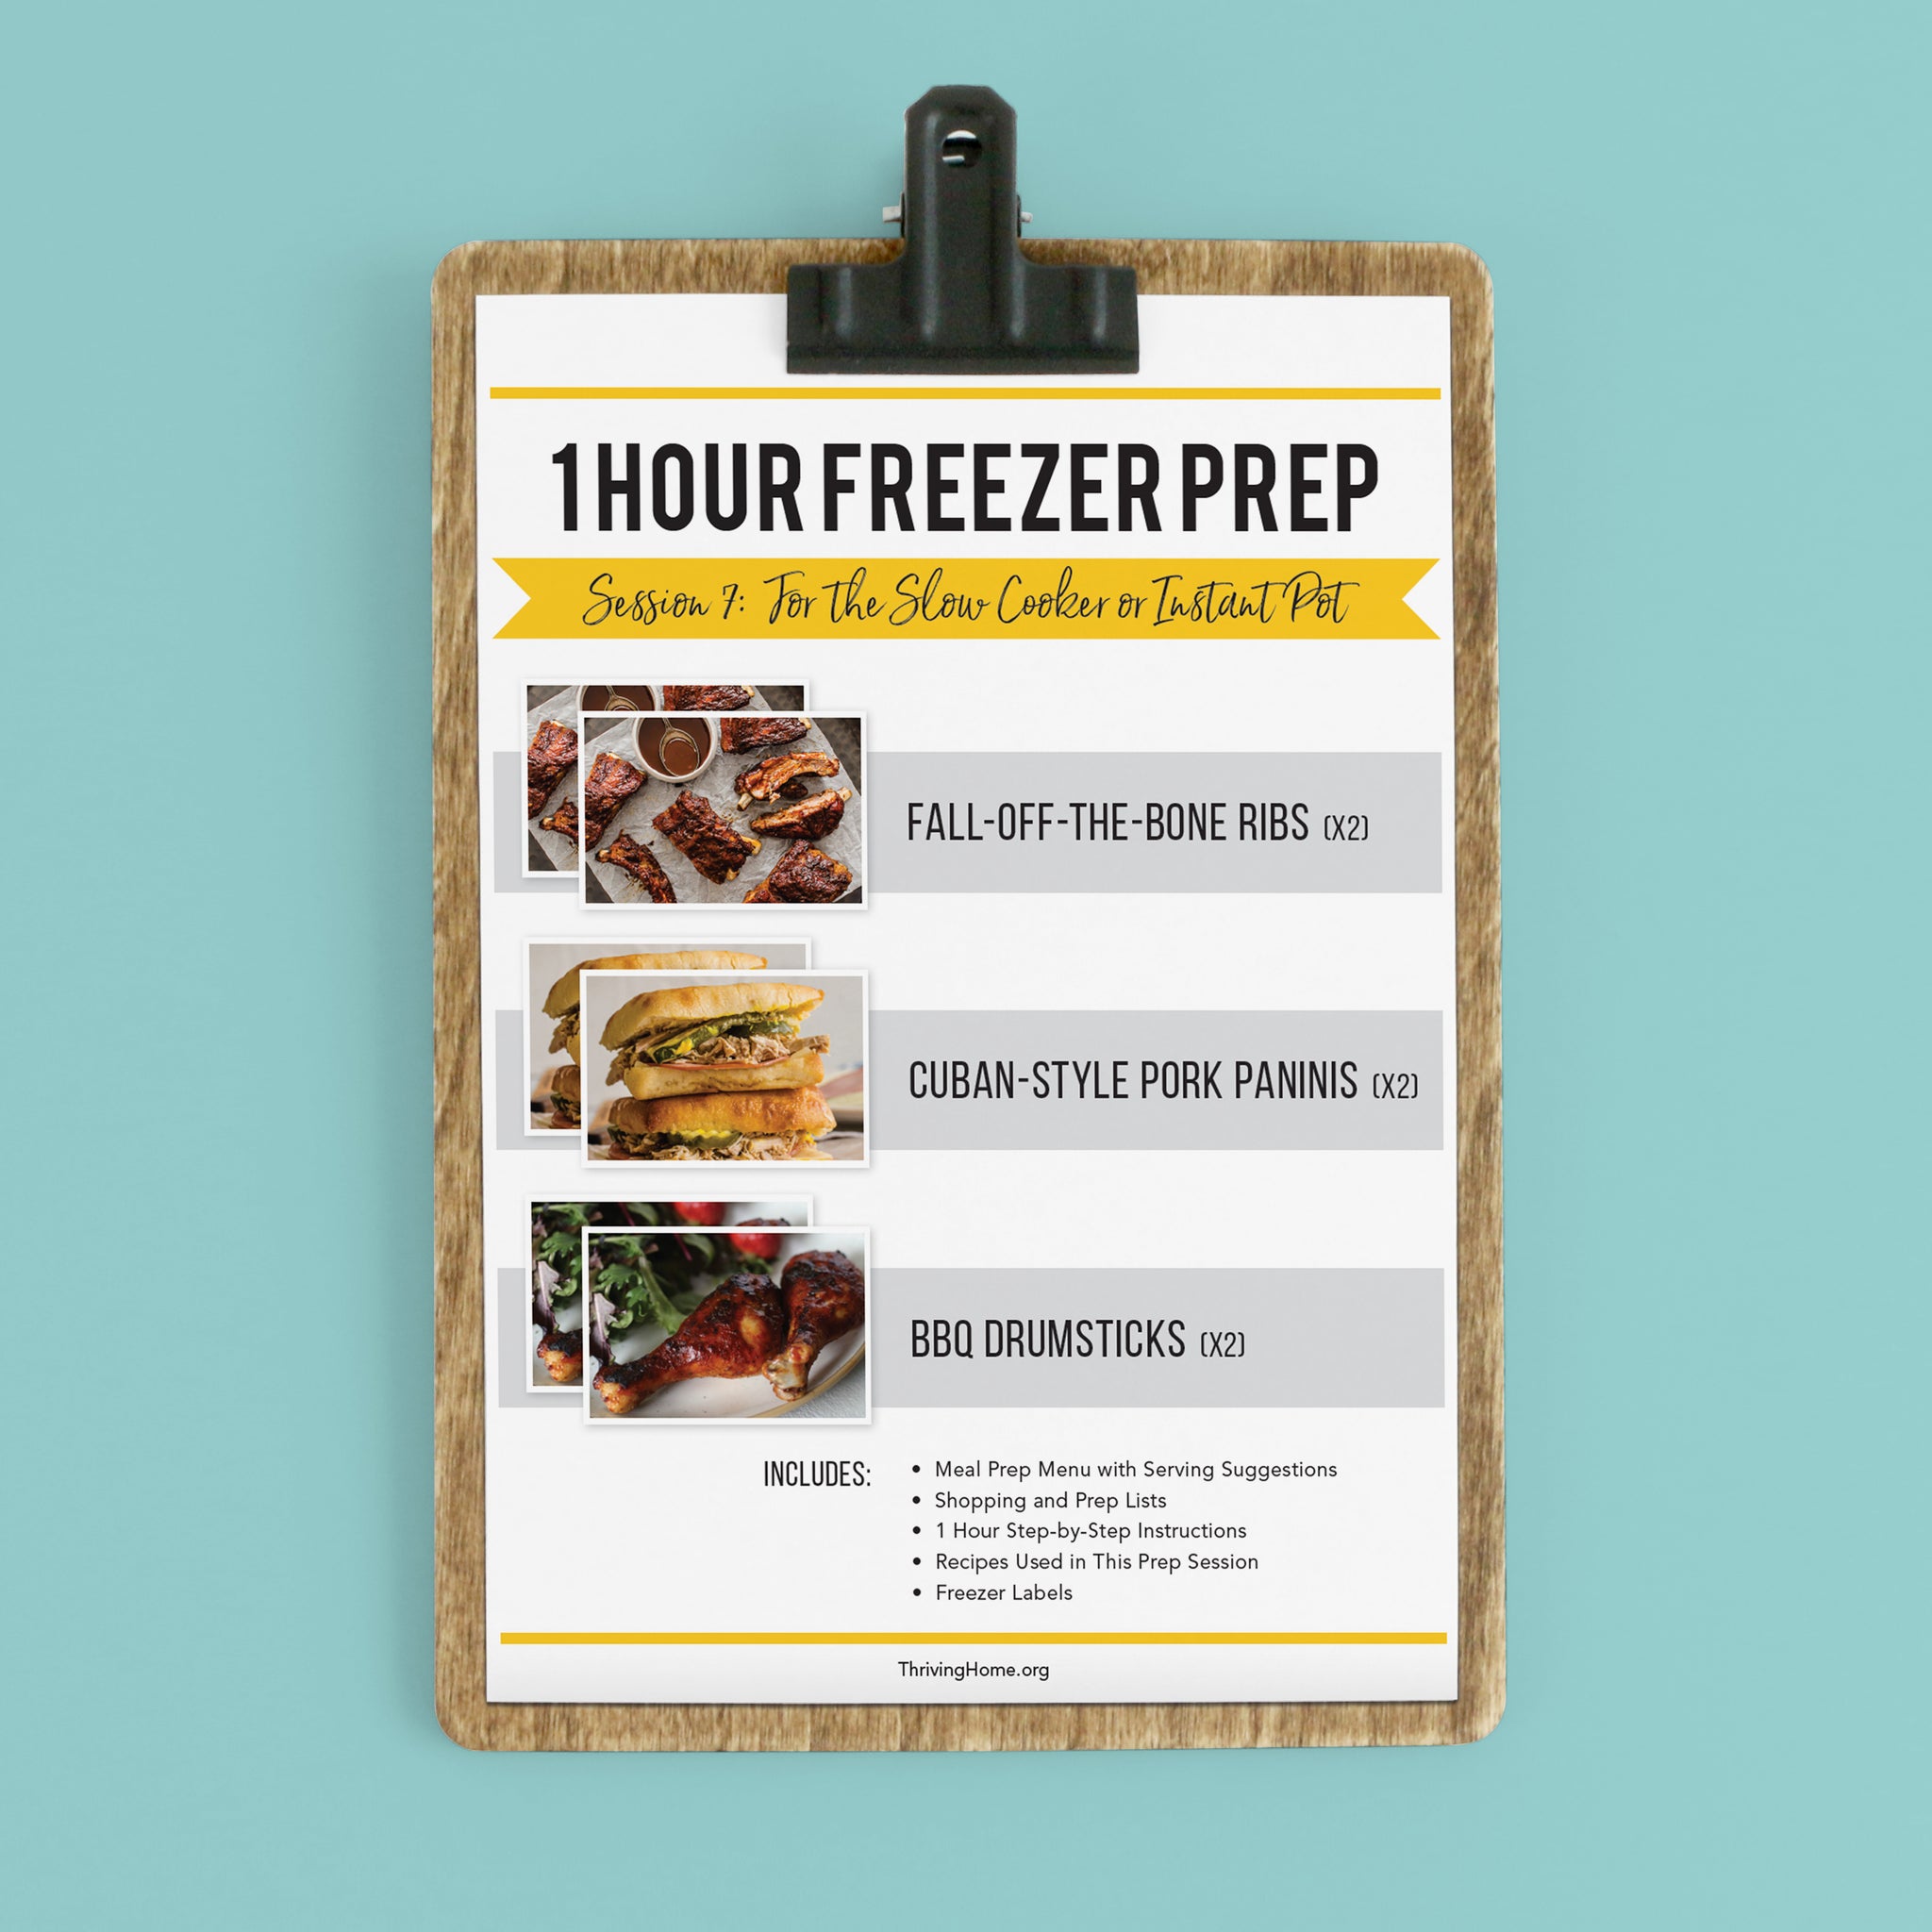 1 Hour Freezer Prep: Session 7